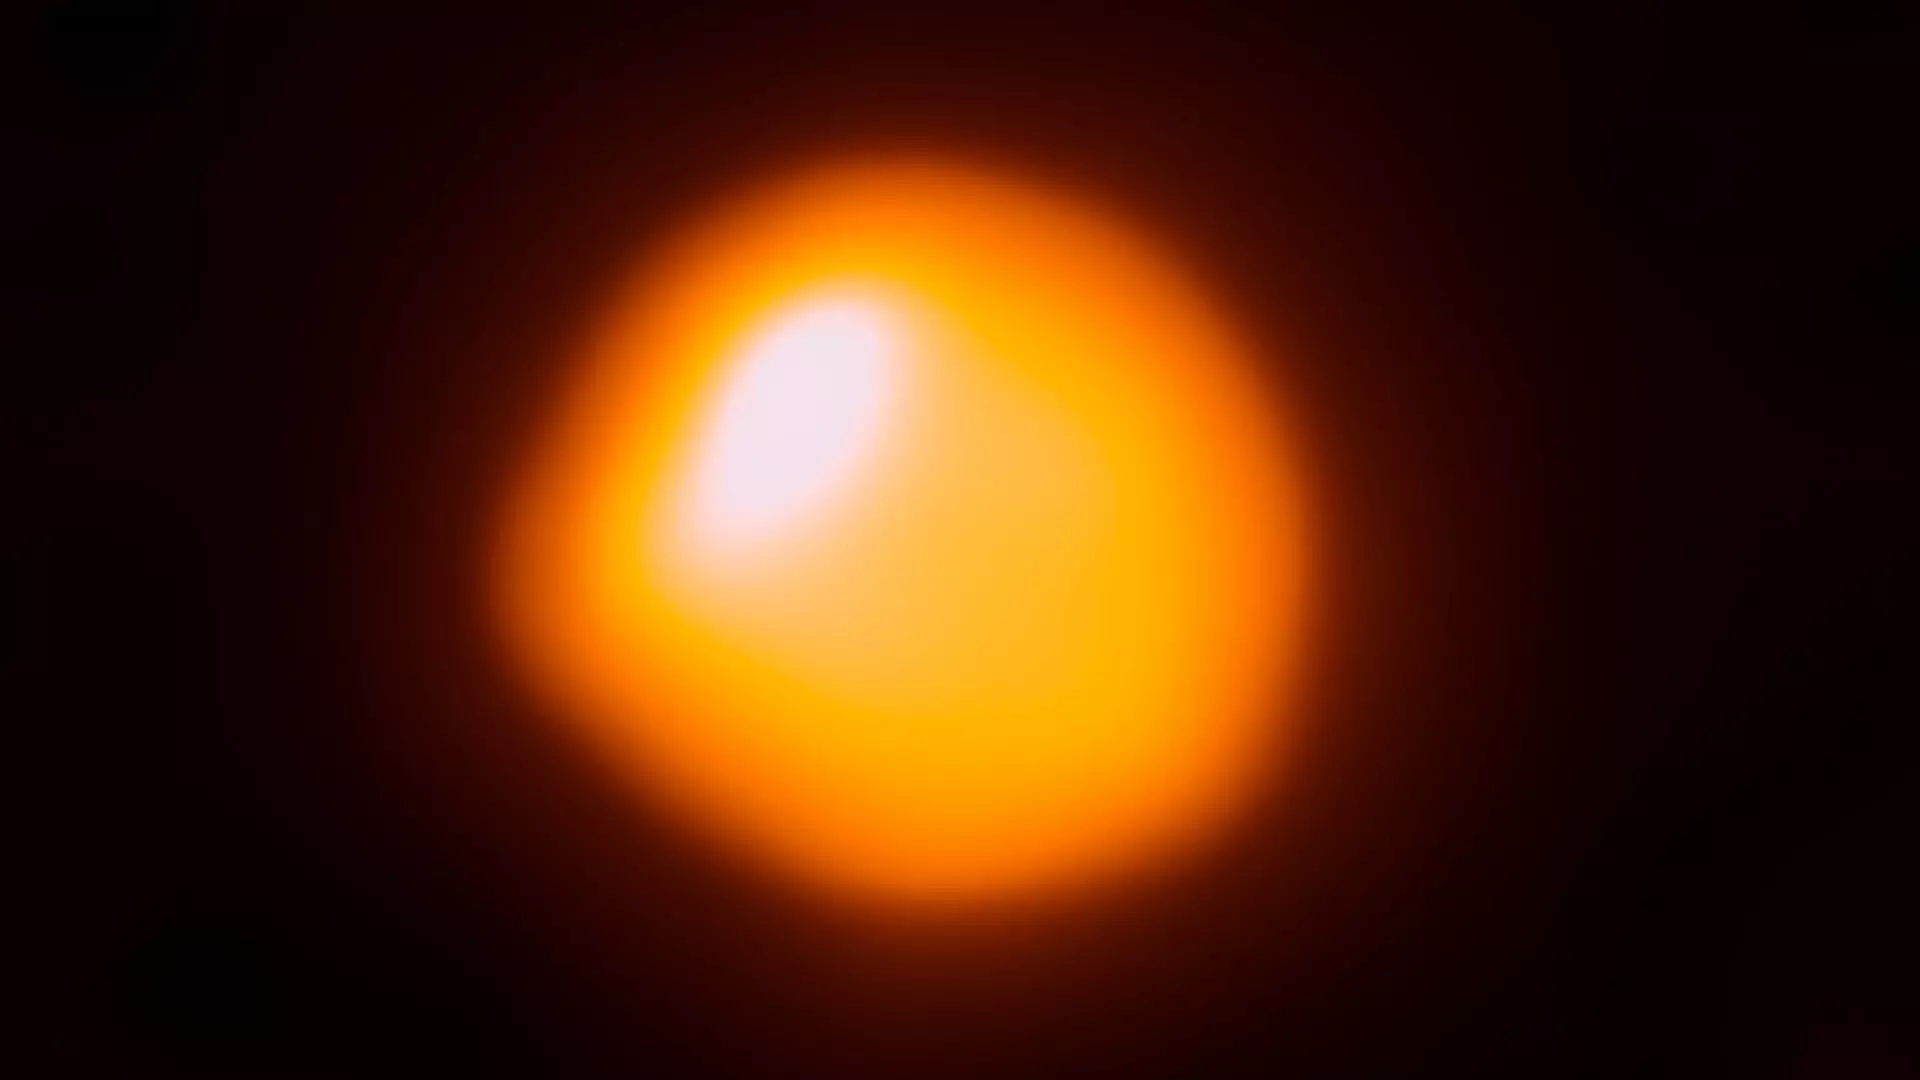 ALMA (Atacama Large Millimeter/Submillimeter Array) ha observado una burbuja naranja que es la estrella cercana Betelgeuse. Esta observación de la superficie de una estrella es la primera realizada por ALMA y ha producido la imagen de Betelgeuse con la mayor resolución disponible hasta el momento.